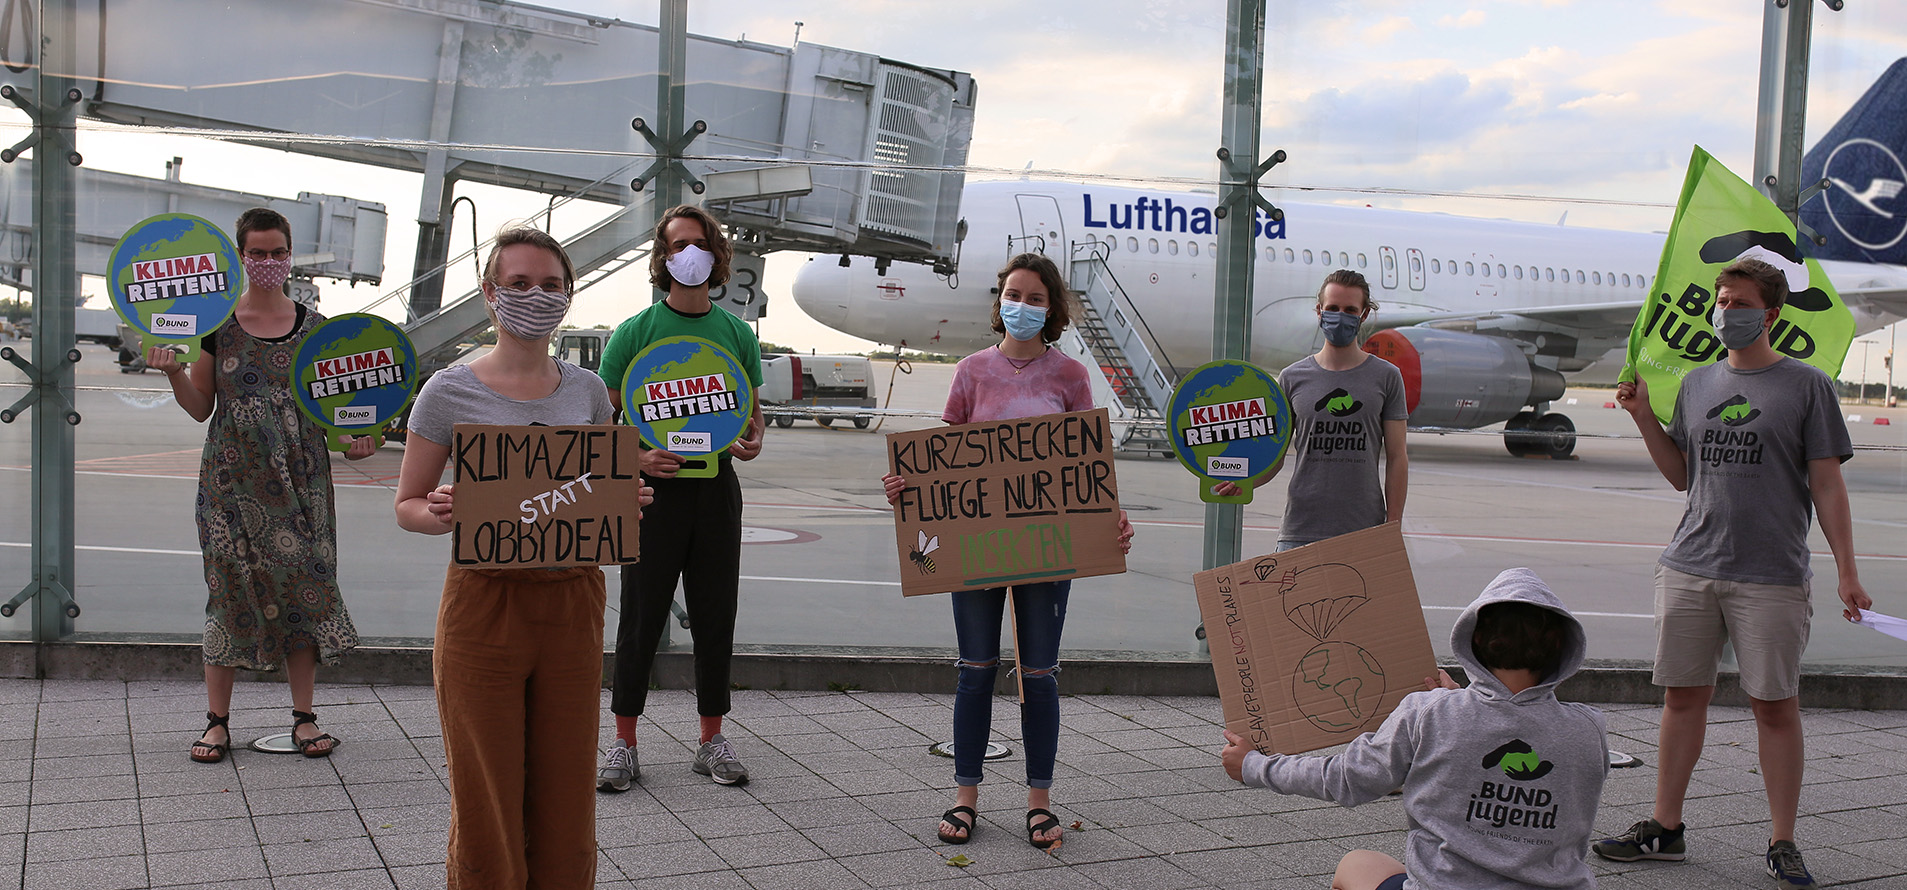 BUNDjugend-Mitglieder am Dresdner Flughafen. Sie tragen Masken und halten Schilder mit den Aufschriften "Klima retten", "Klimaziel statt Lobbydeal" und "Kurzstreckenflüge nur noch für Insekten". 